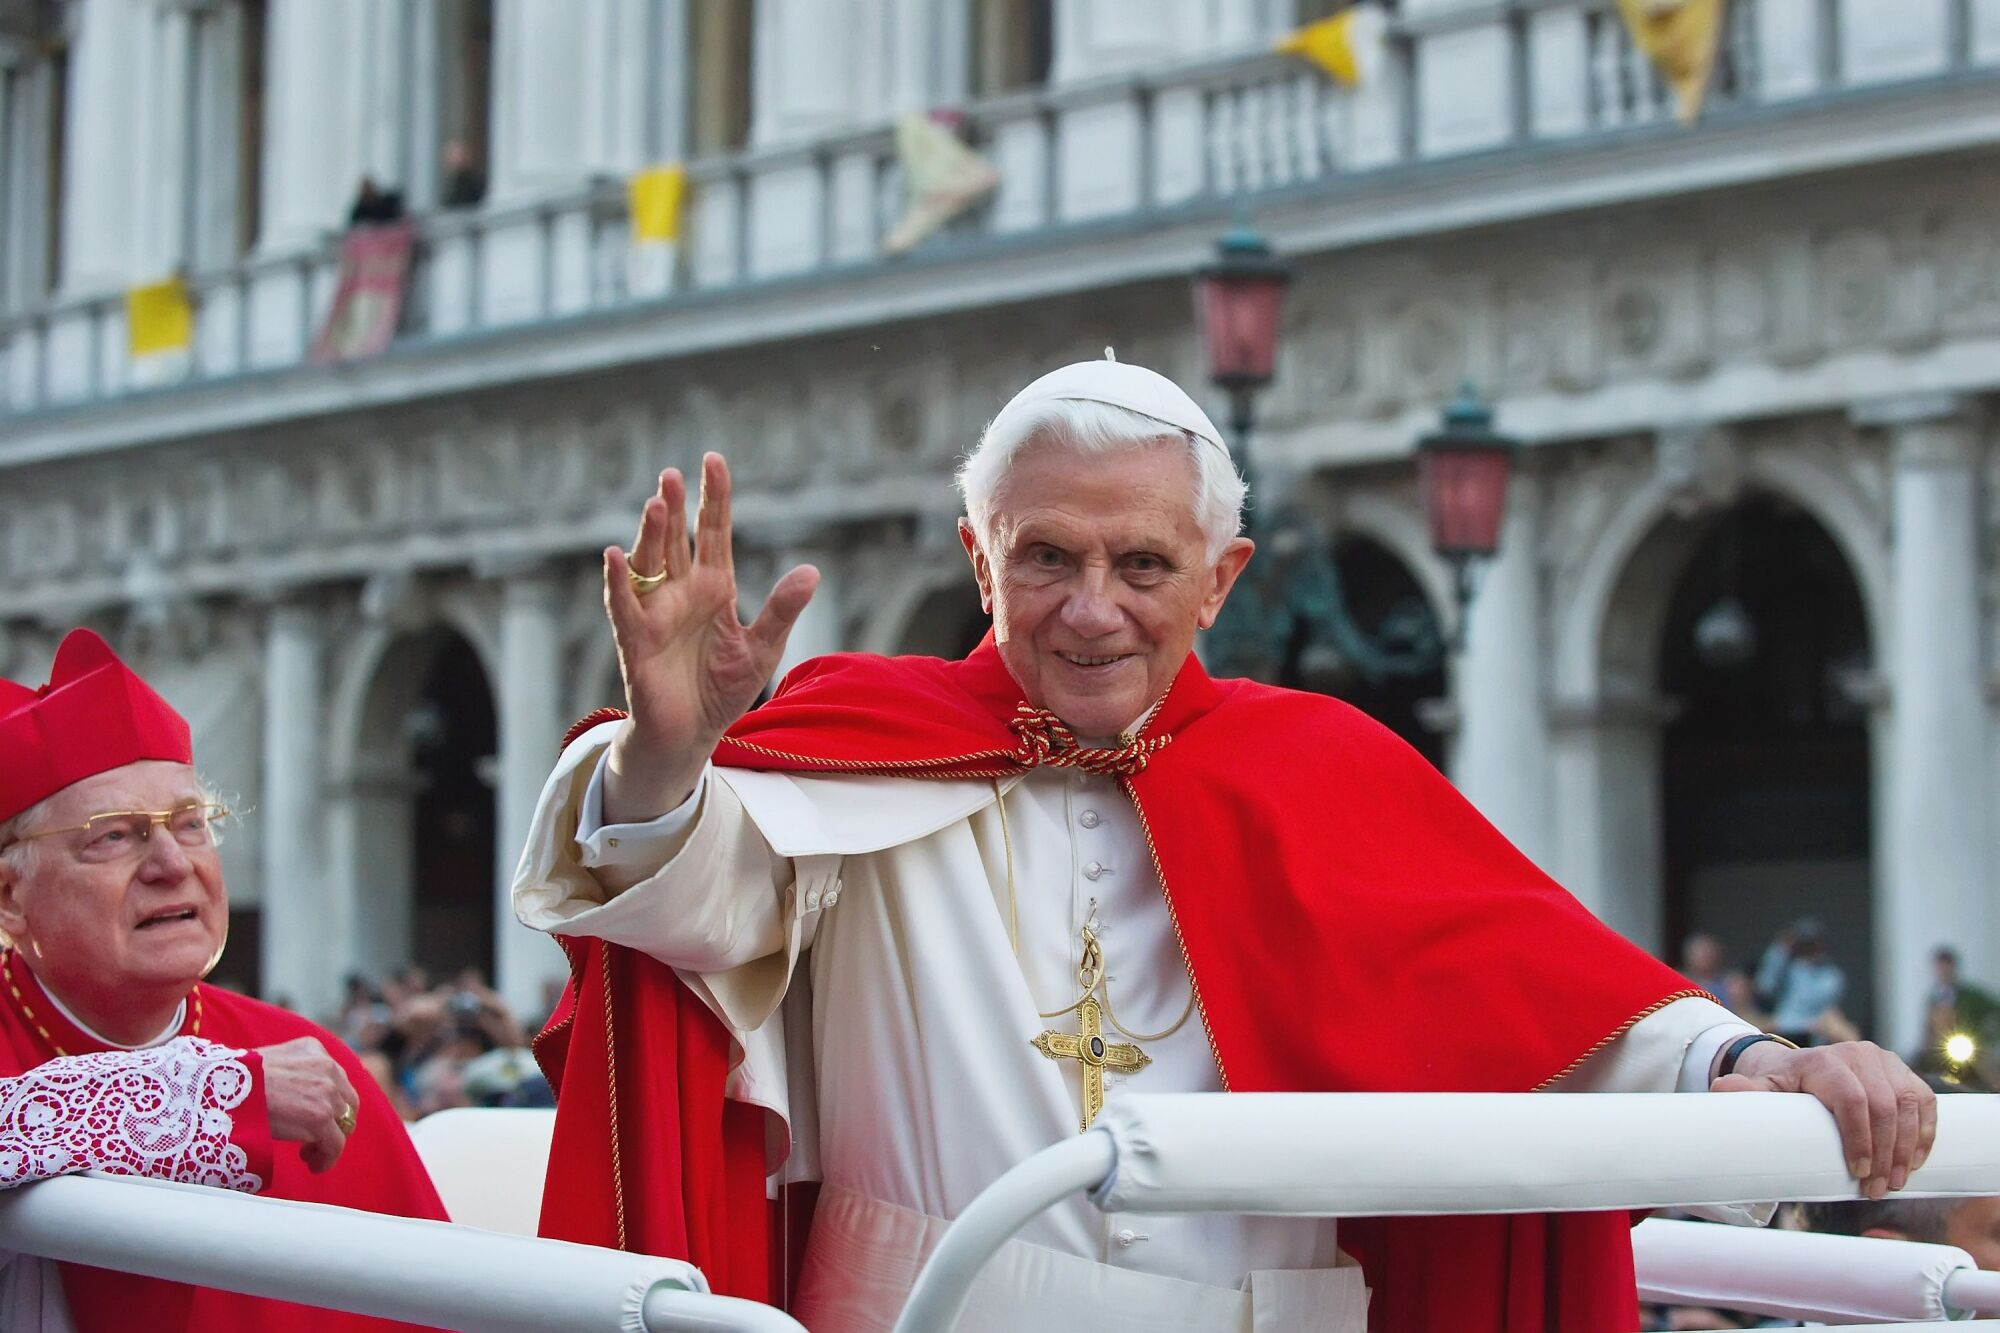 Papa Bento XVI  ondas de um veículo enquanto outro passageiro observa enquanto eles passam por um prédio.